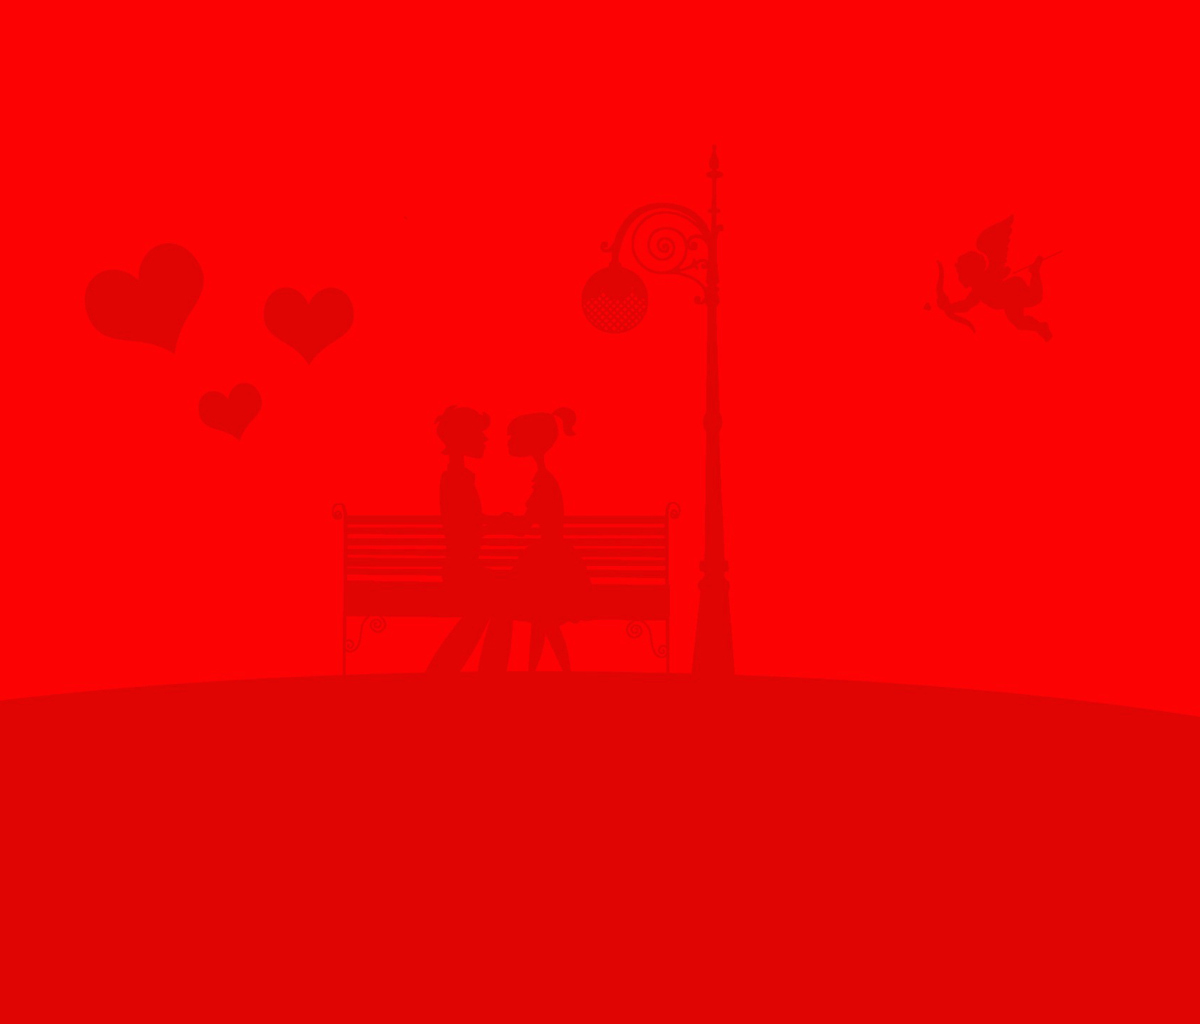 Das Red Valentine Wallpaper 1200x1024